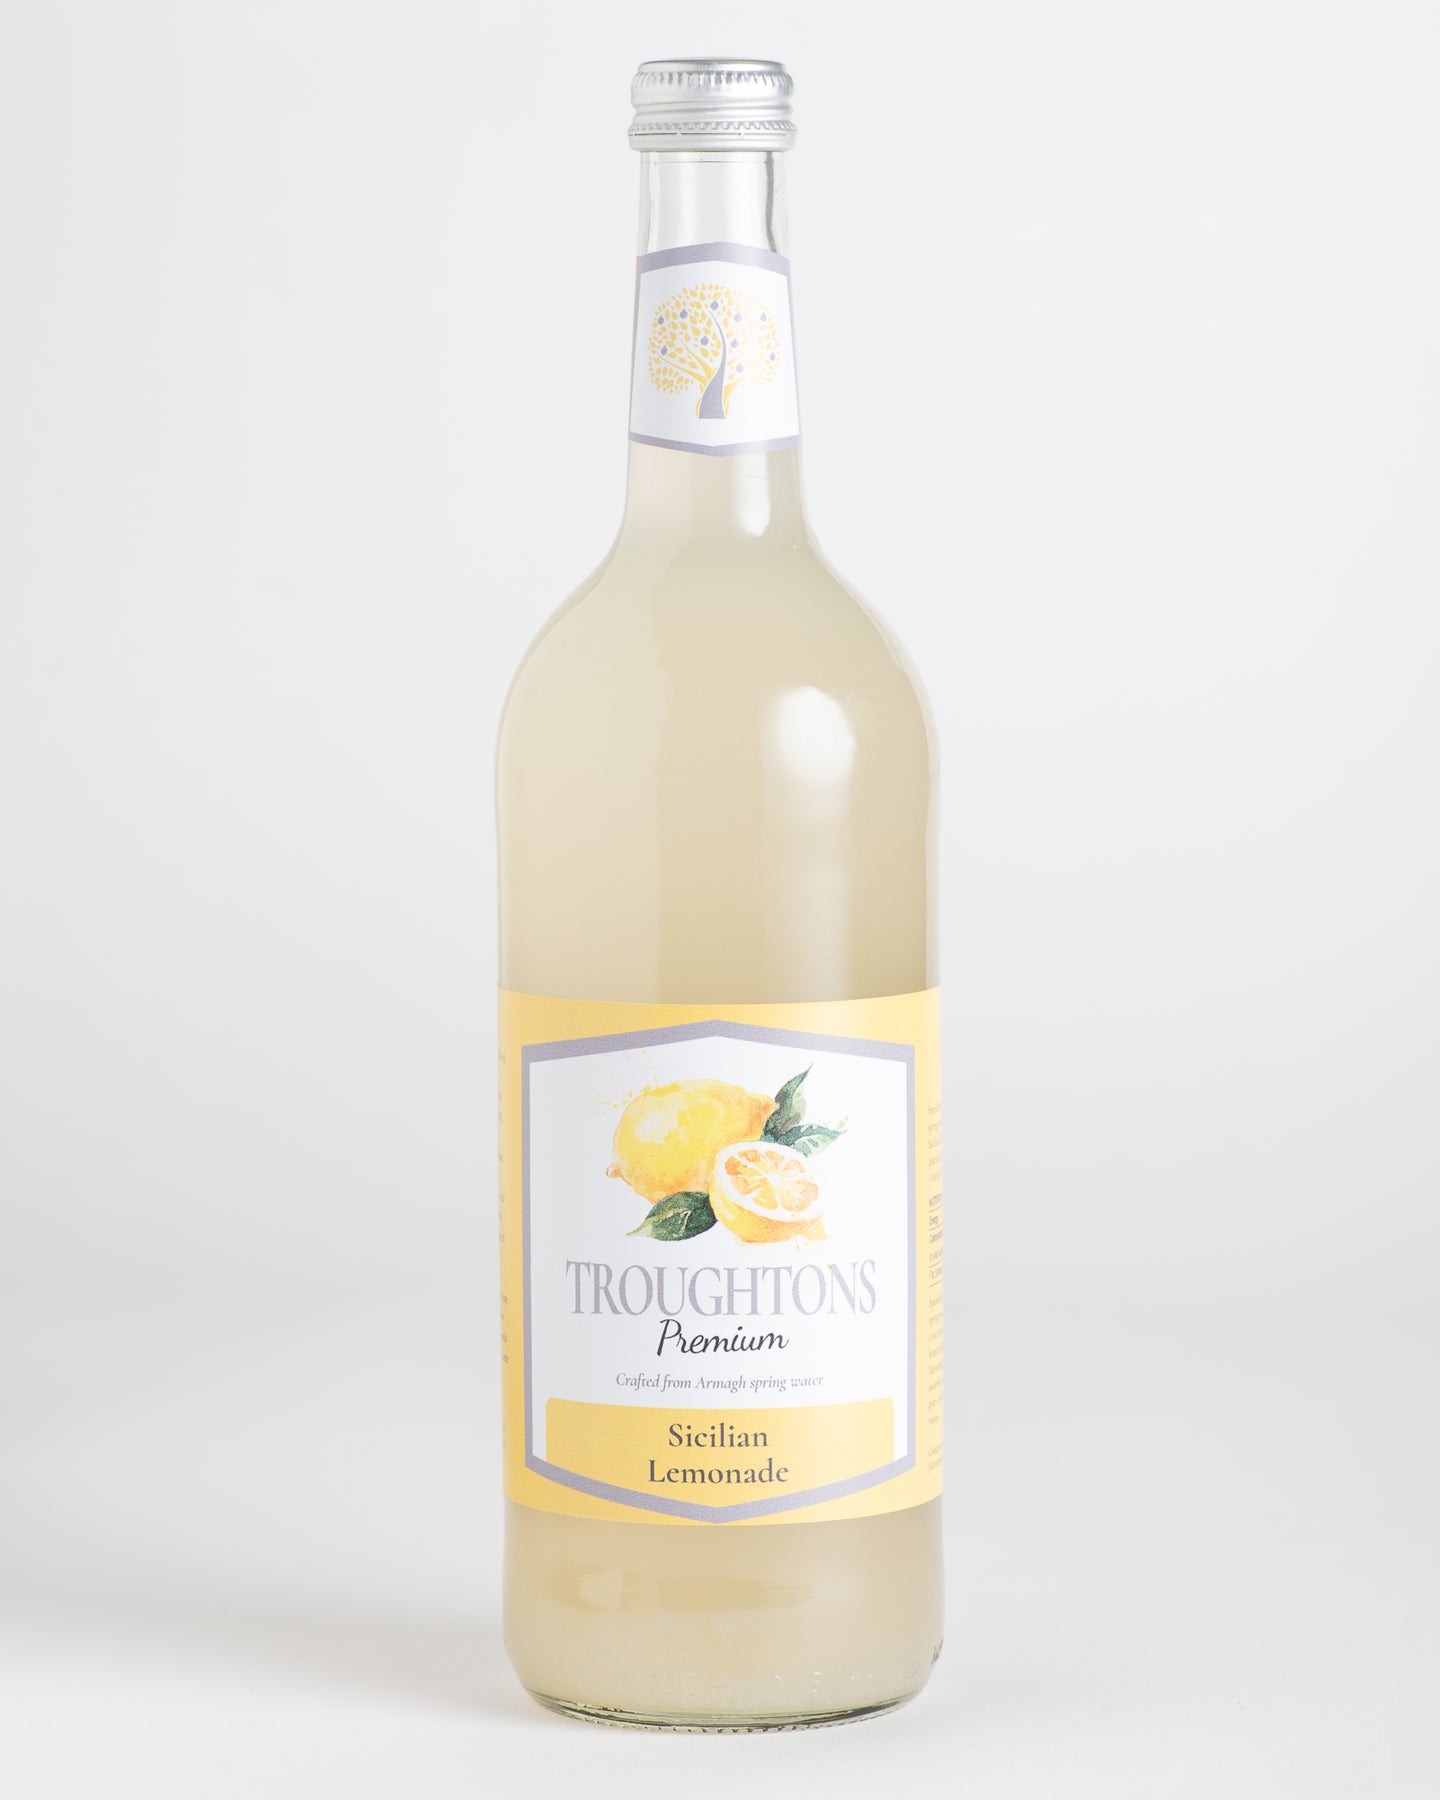 Troughtons Premium -Sicilian Lemonade